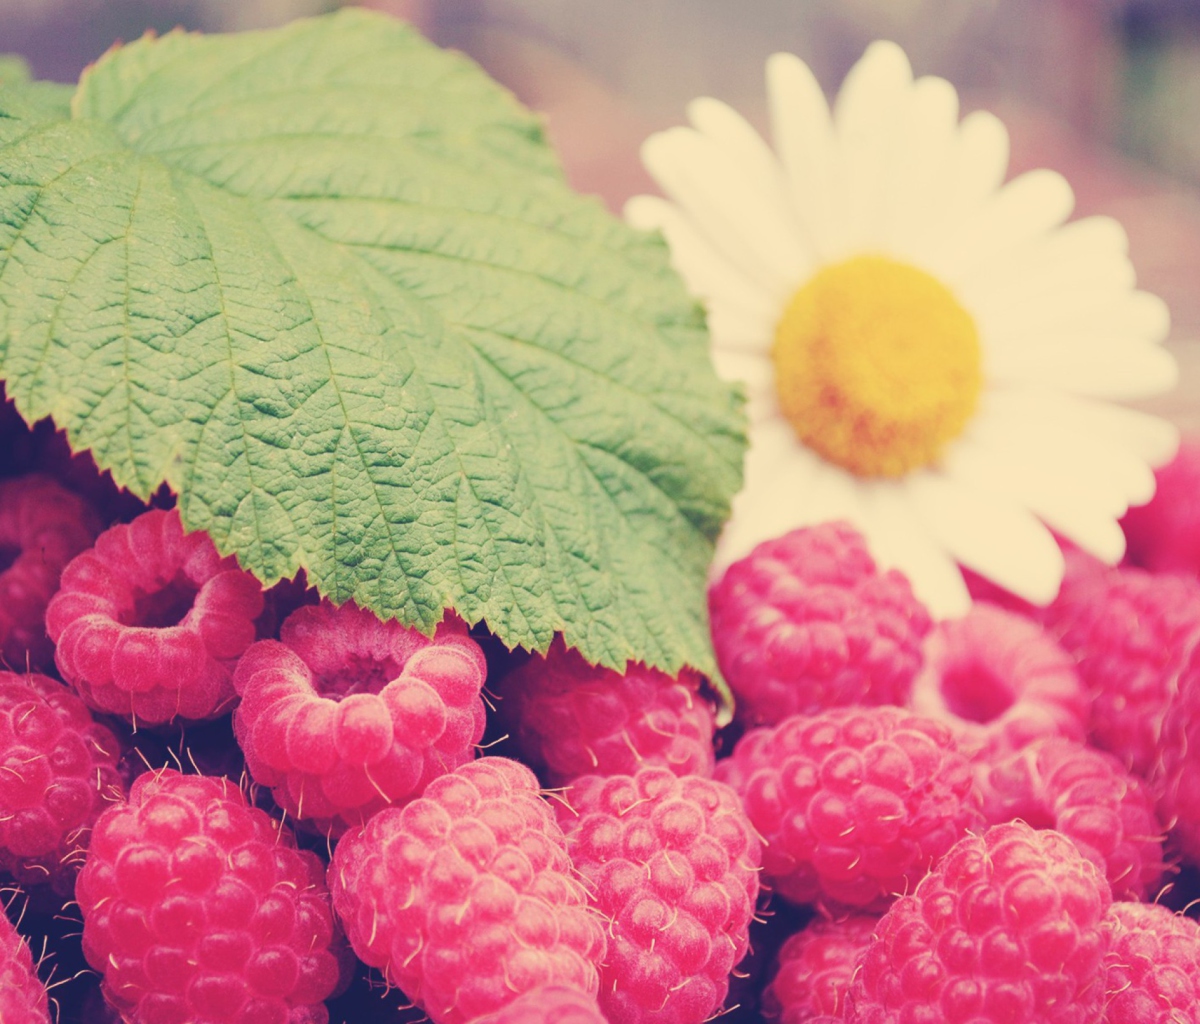 Raspberries And Daisy screenshot #1 1200x1024